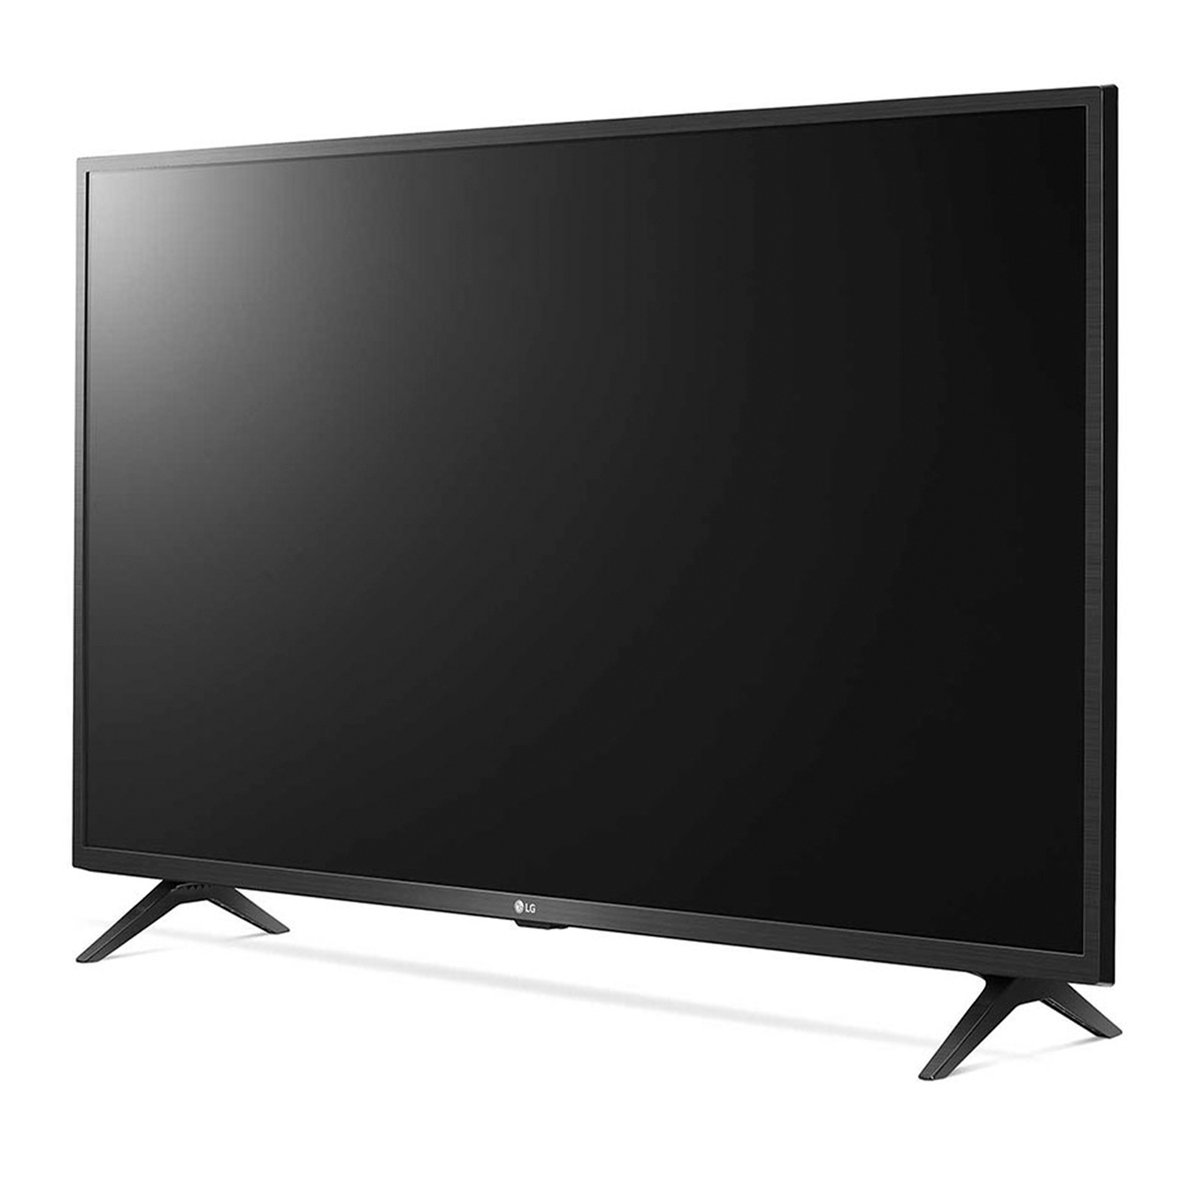 LG 43" UN73 Series, 4K Active HDR WebOS Smart AI ThinQ LED TV 43UN7340PVC